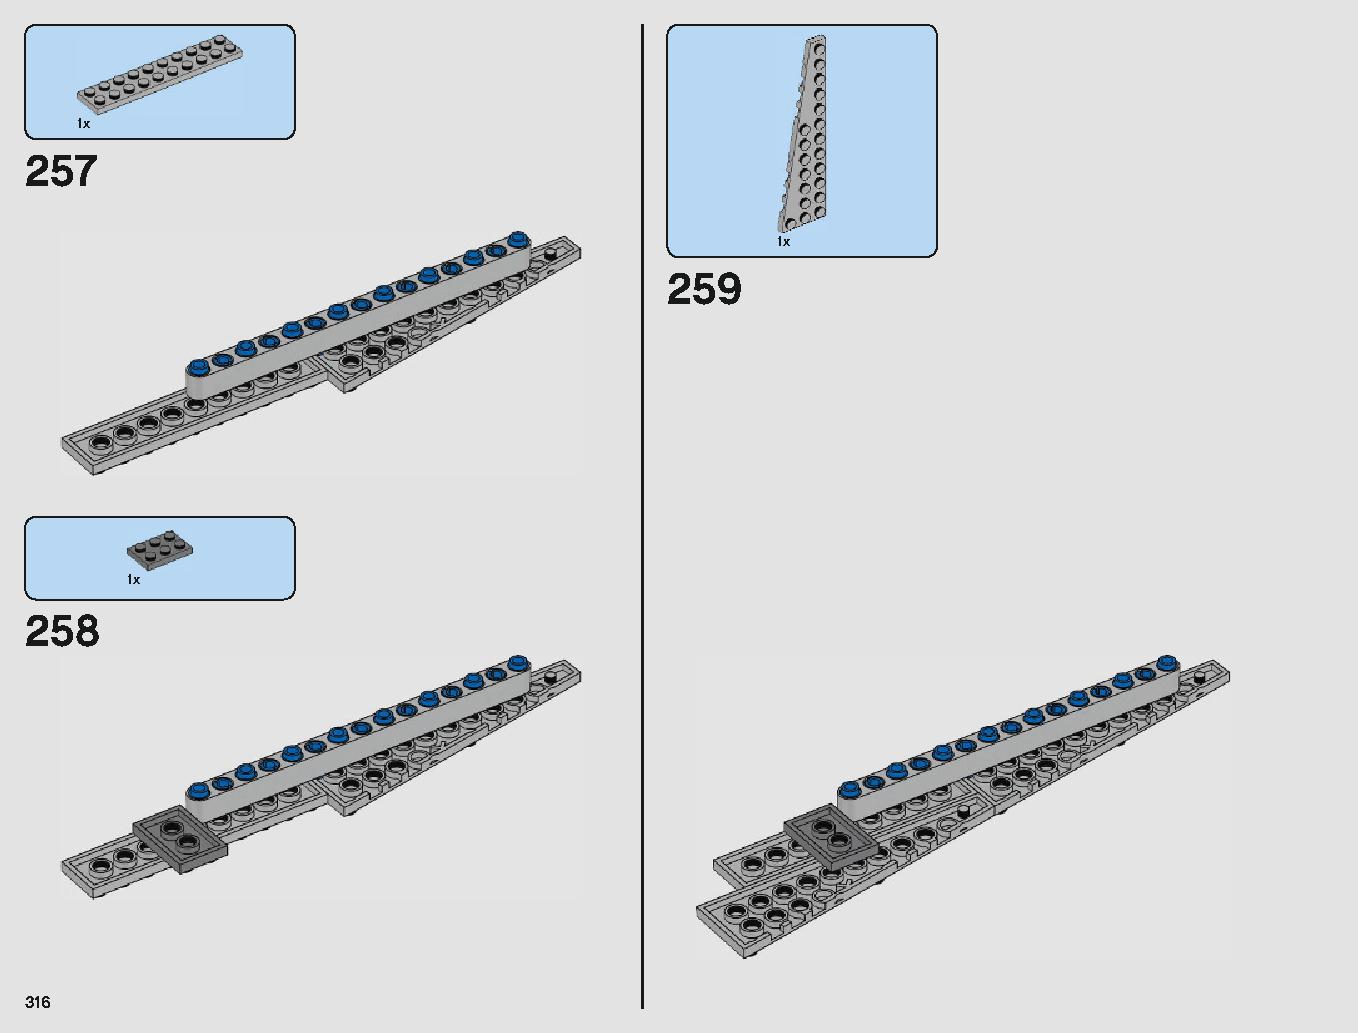 クラウド・シティ 75222 レゴの商品情報 レゴの説明書・組立方法 316 page